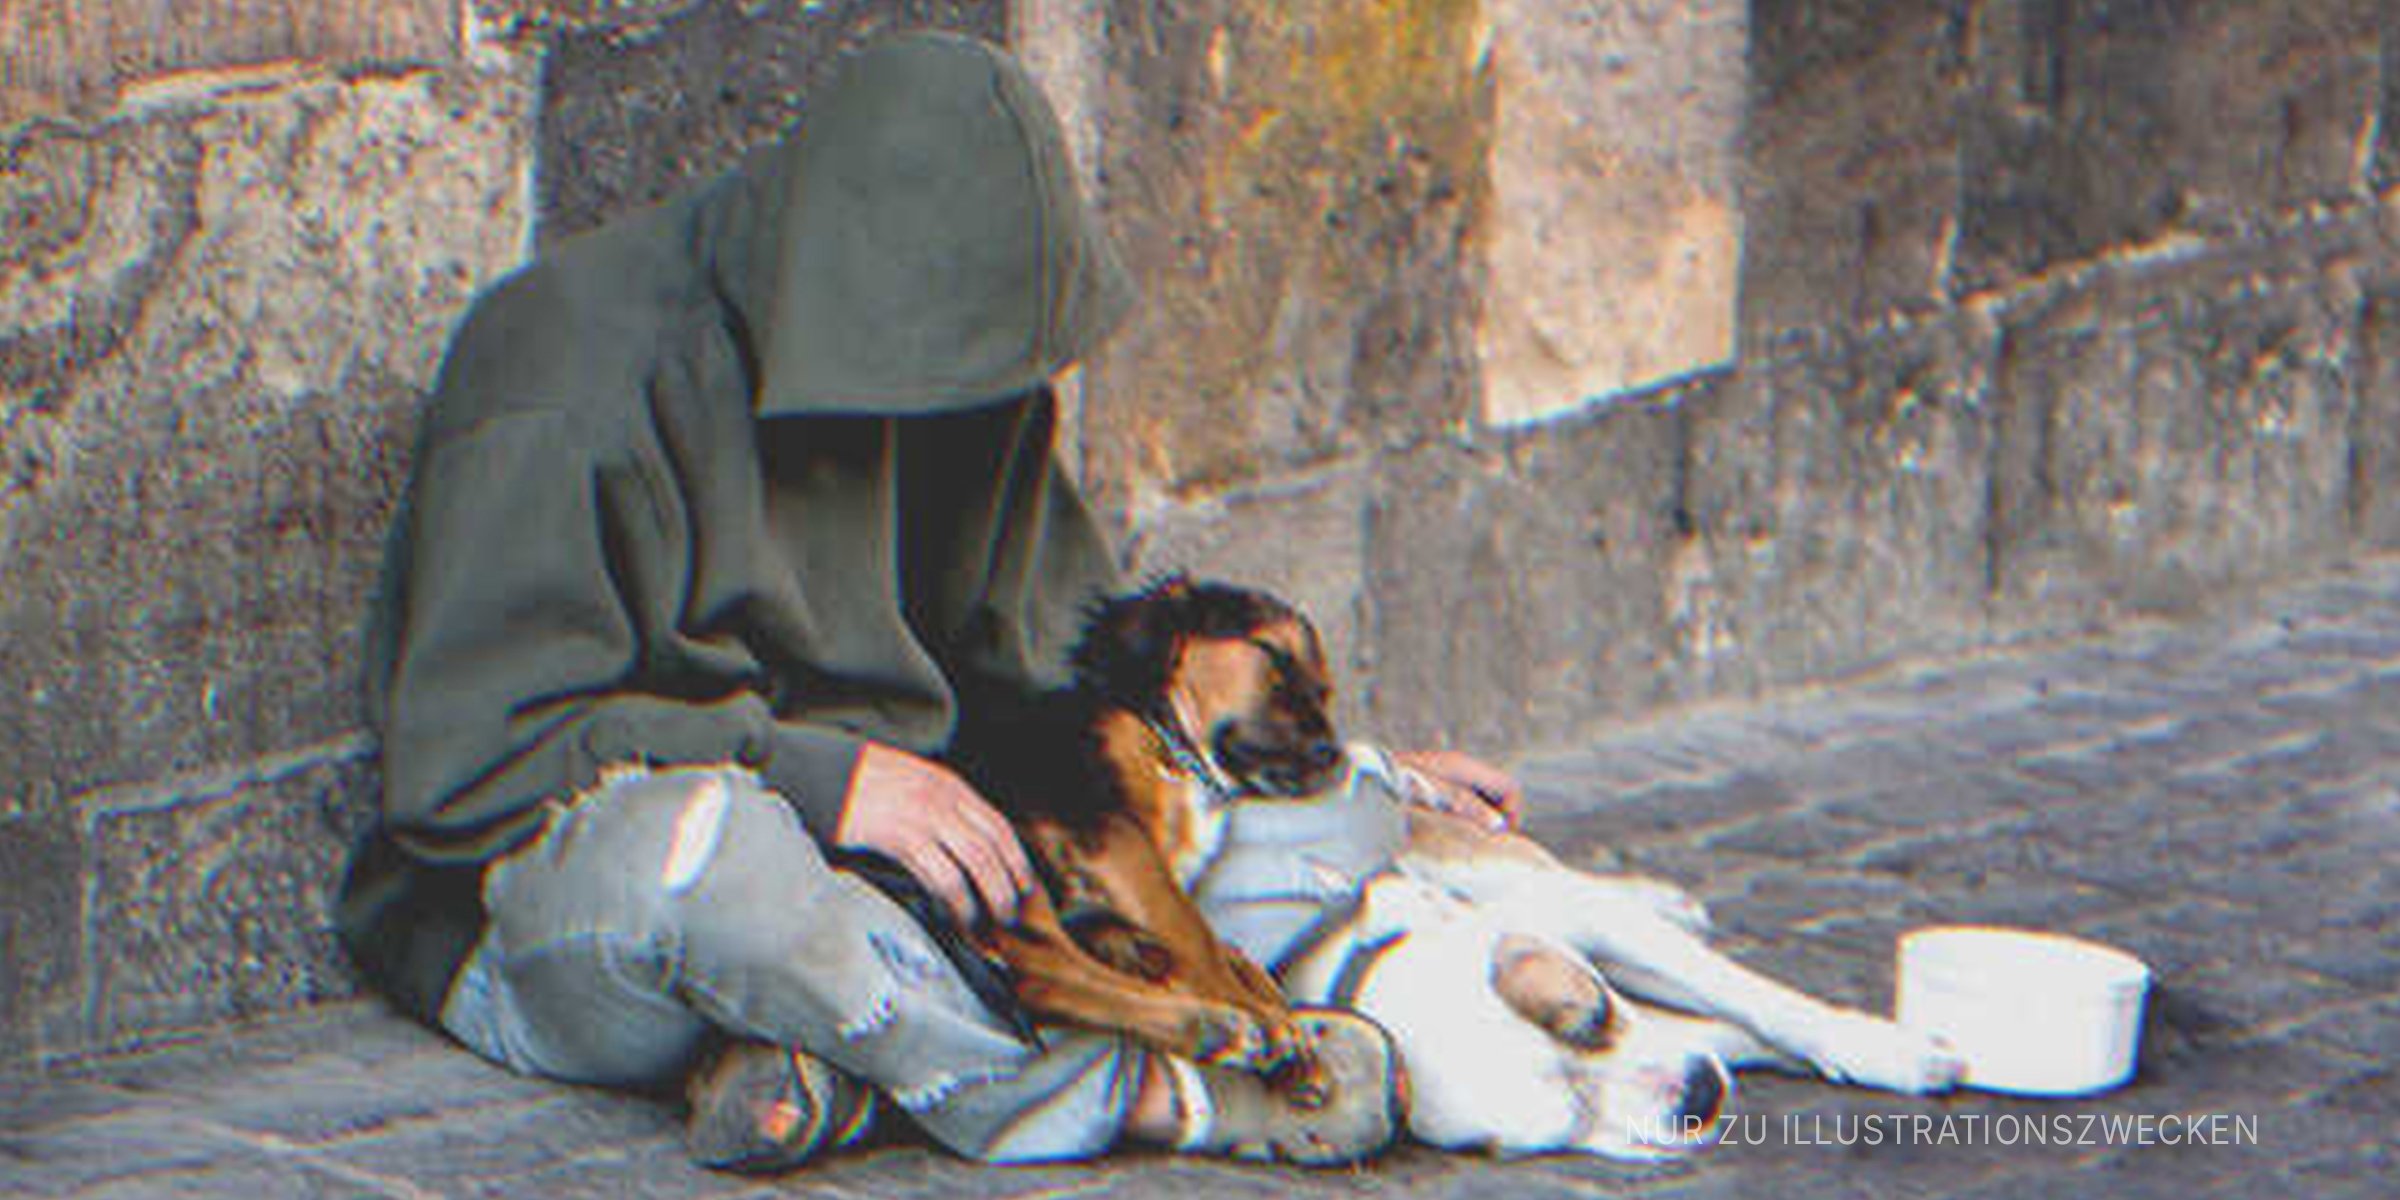 Hungriger Bettler, der mit Hunden sitzt | Quelle: Shutterstock